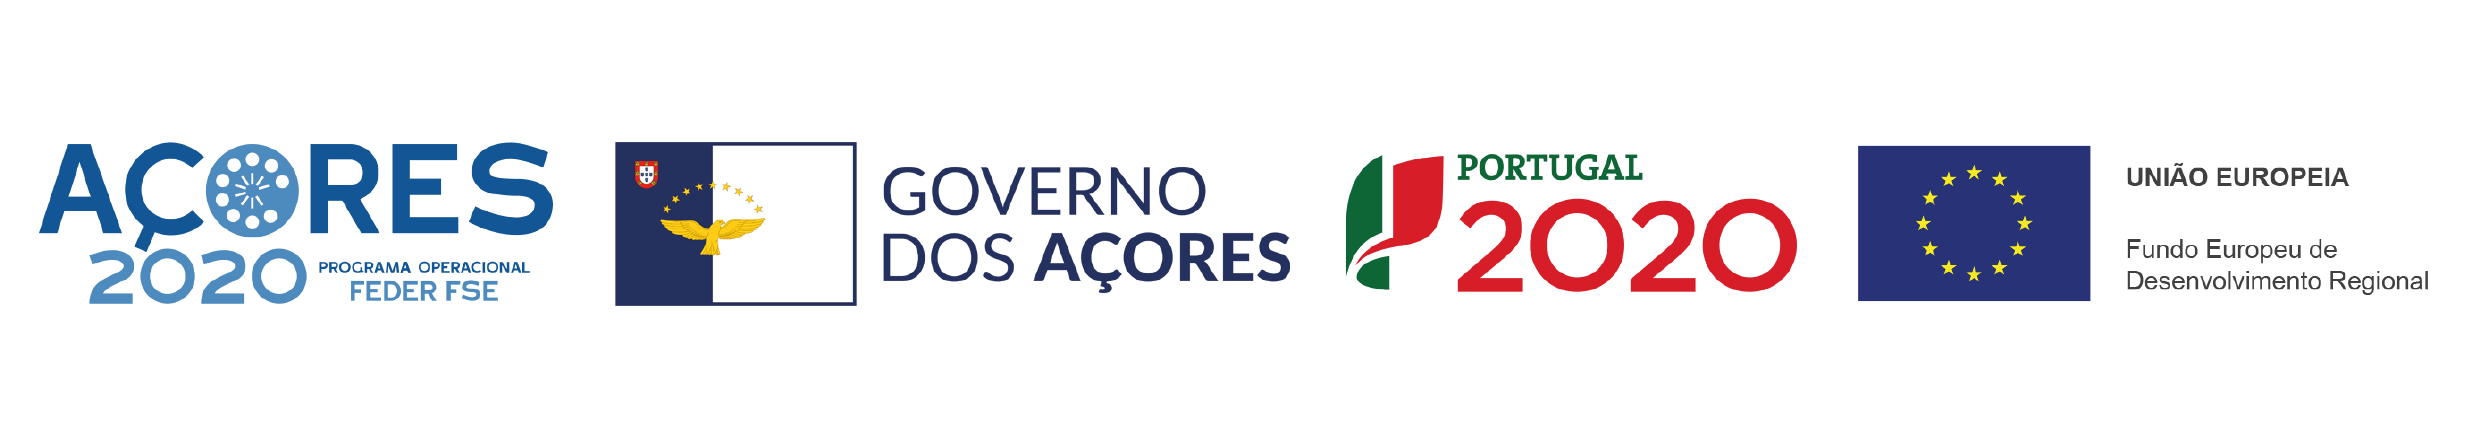 Açores 2020